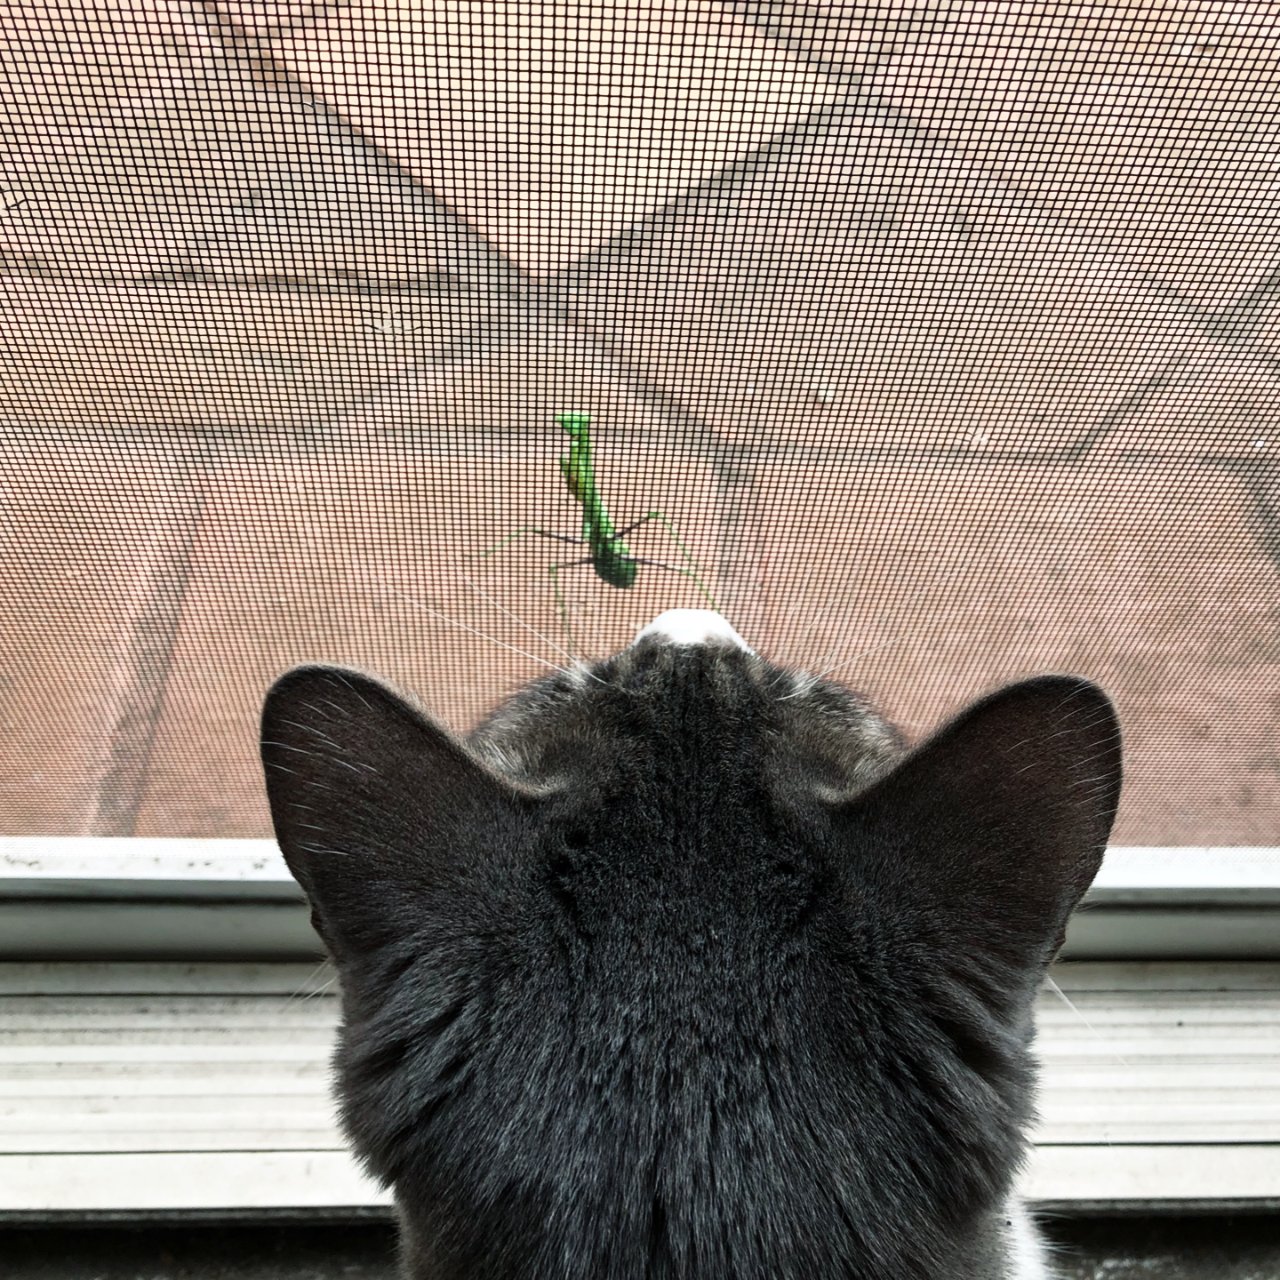 院子來了小螳螂訪客引起了貓貓好奇心🦖🦖...